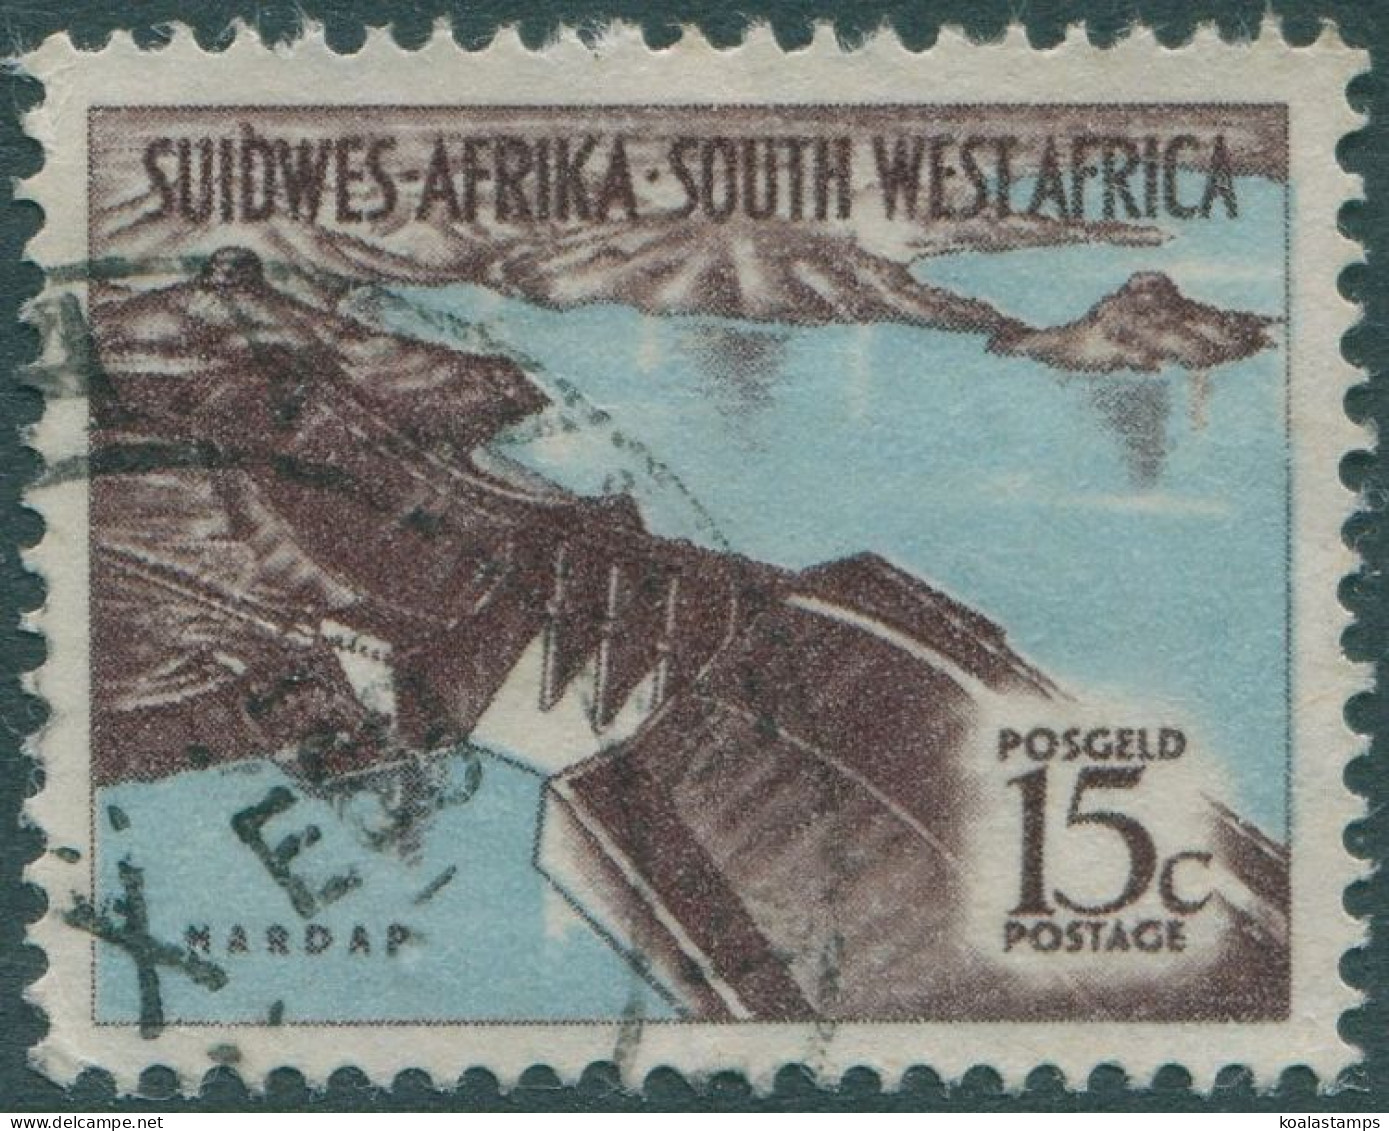 South West Africa 1961 SG182 15c Hardap Dam FU - Namibia (1990- ...)